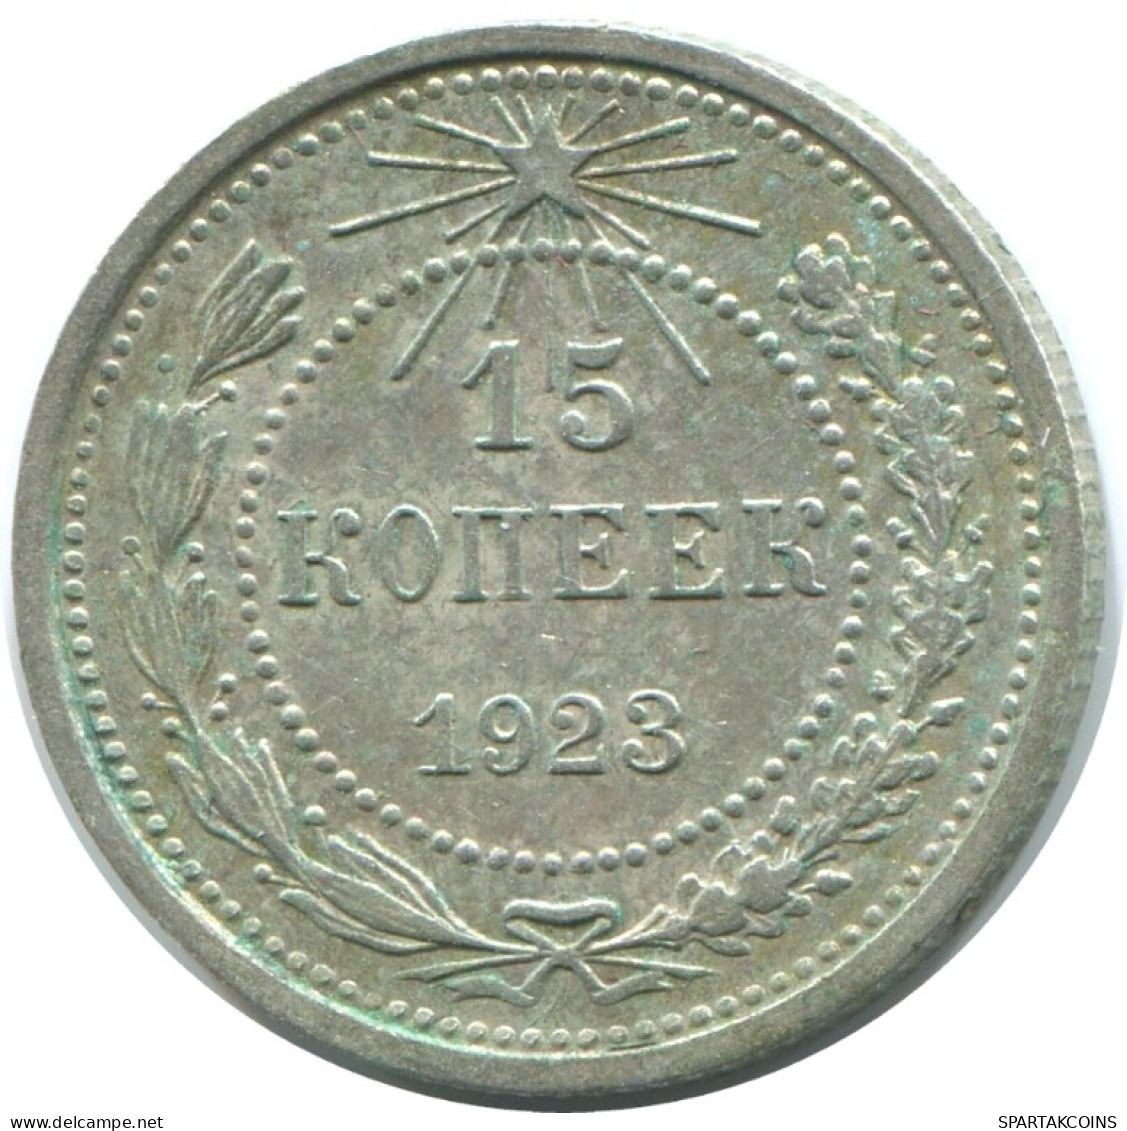 15 KOPEKS 1923 RUSSLAND RUSSIA RSFSR SILBER Münze HIGH GRADE #AF108.4.D.A - Russia